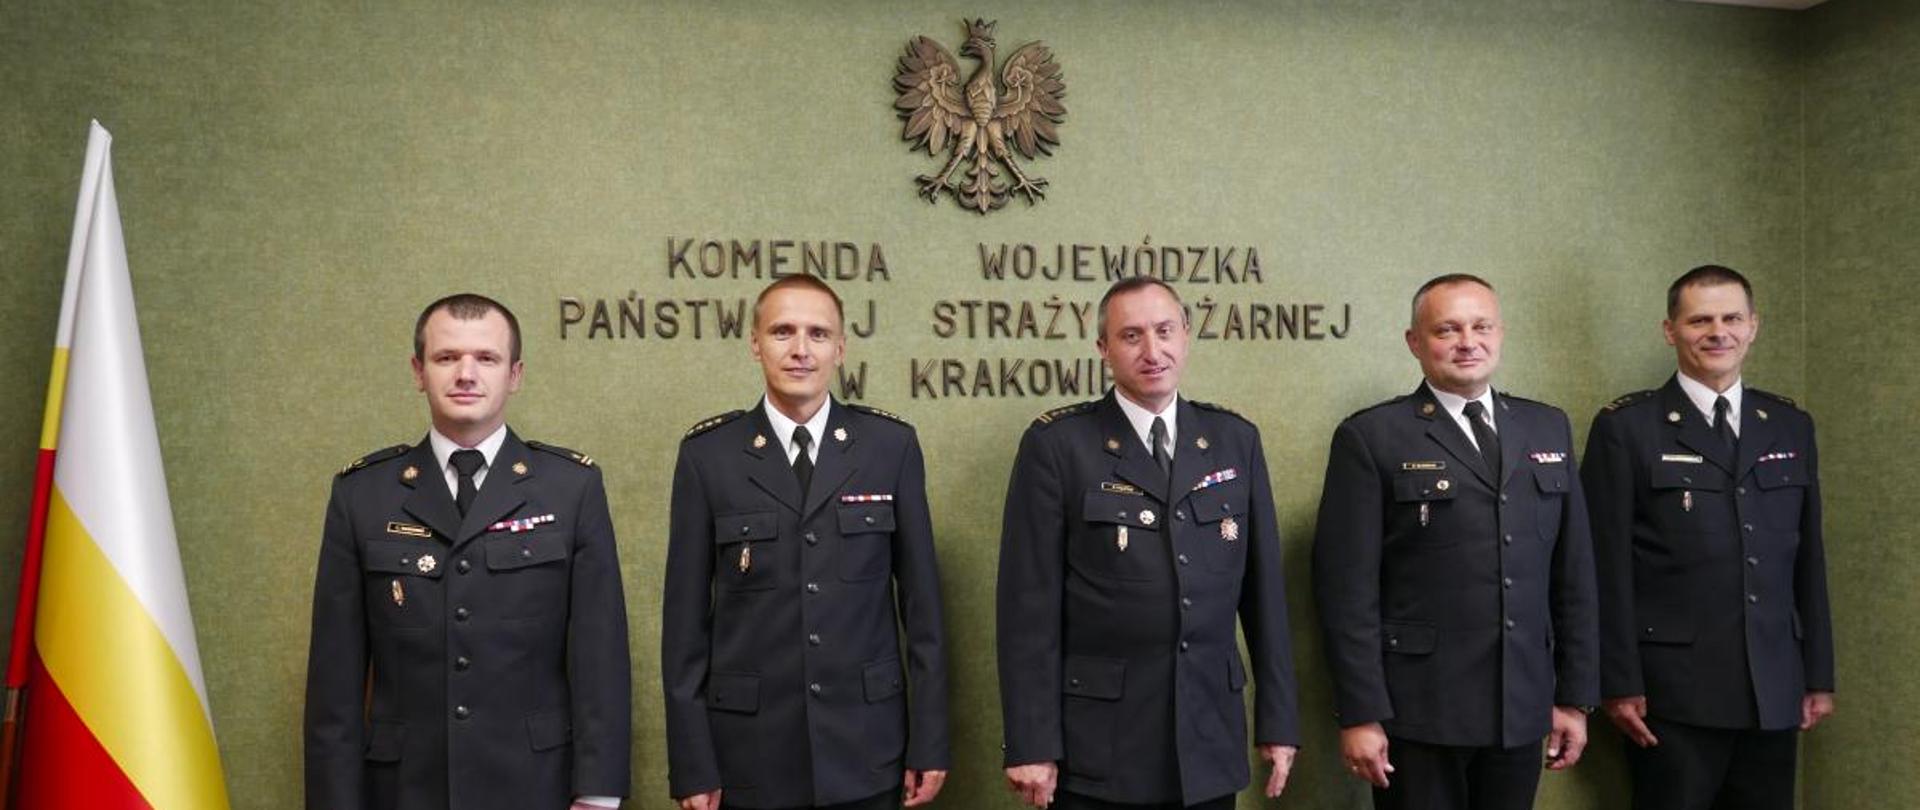 zdjęcie przedstawiające pięciu funkcjonariuszy PSP w umundurowaniu wyjściowym.